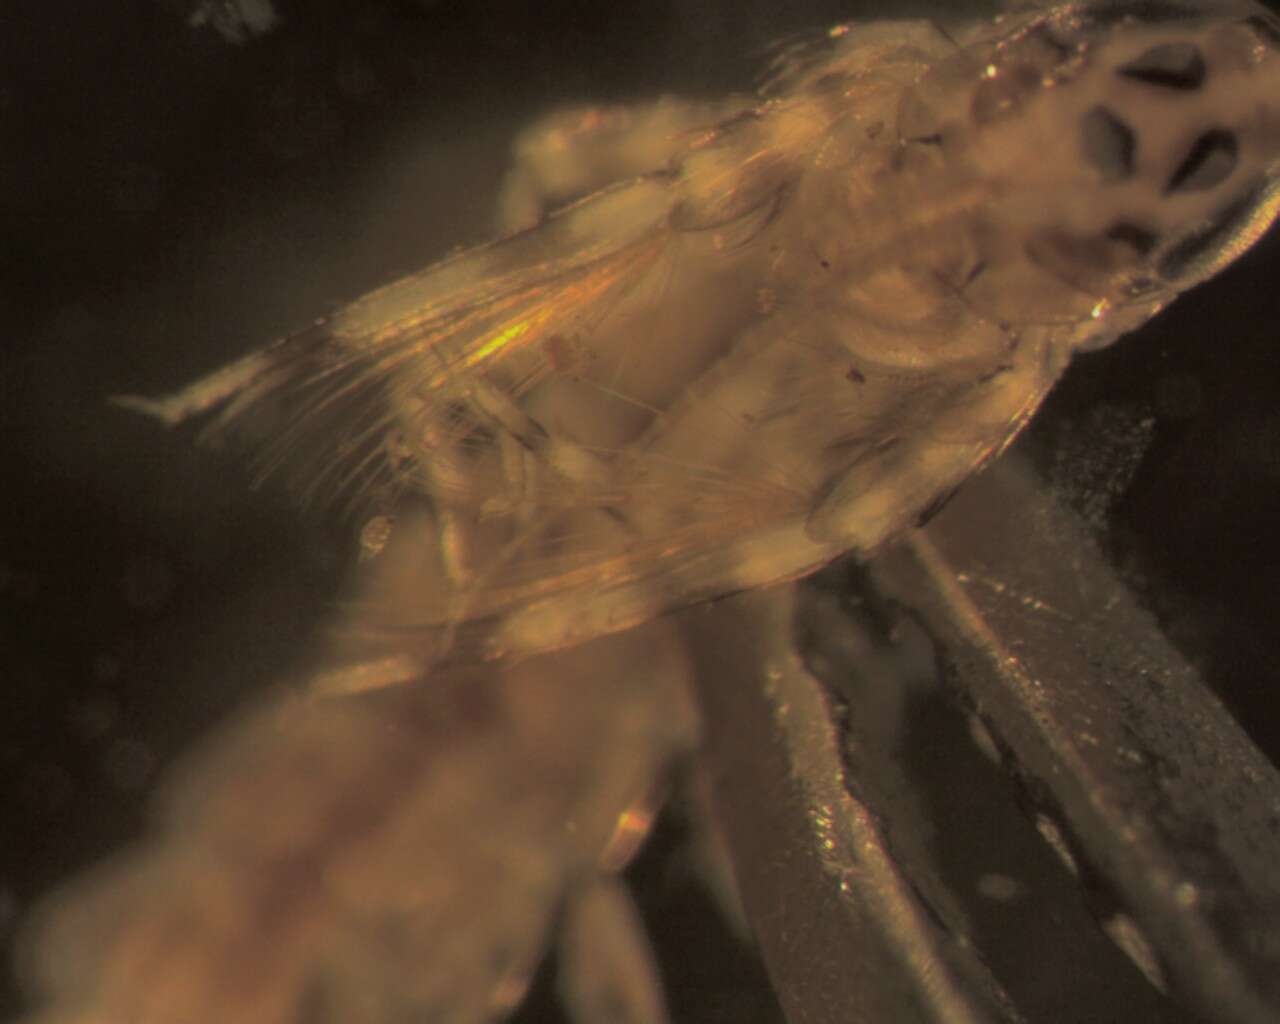 Image of brushlegged mayflies